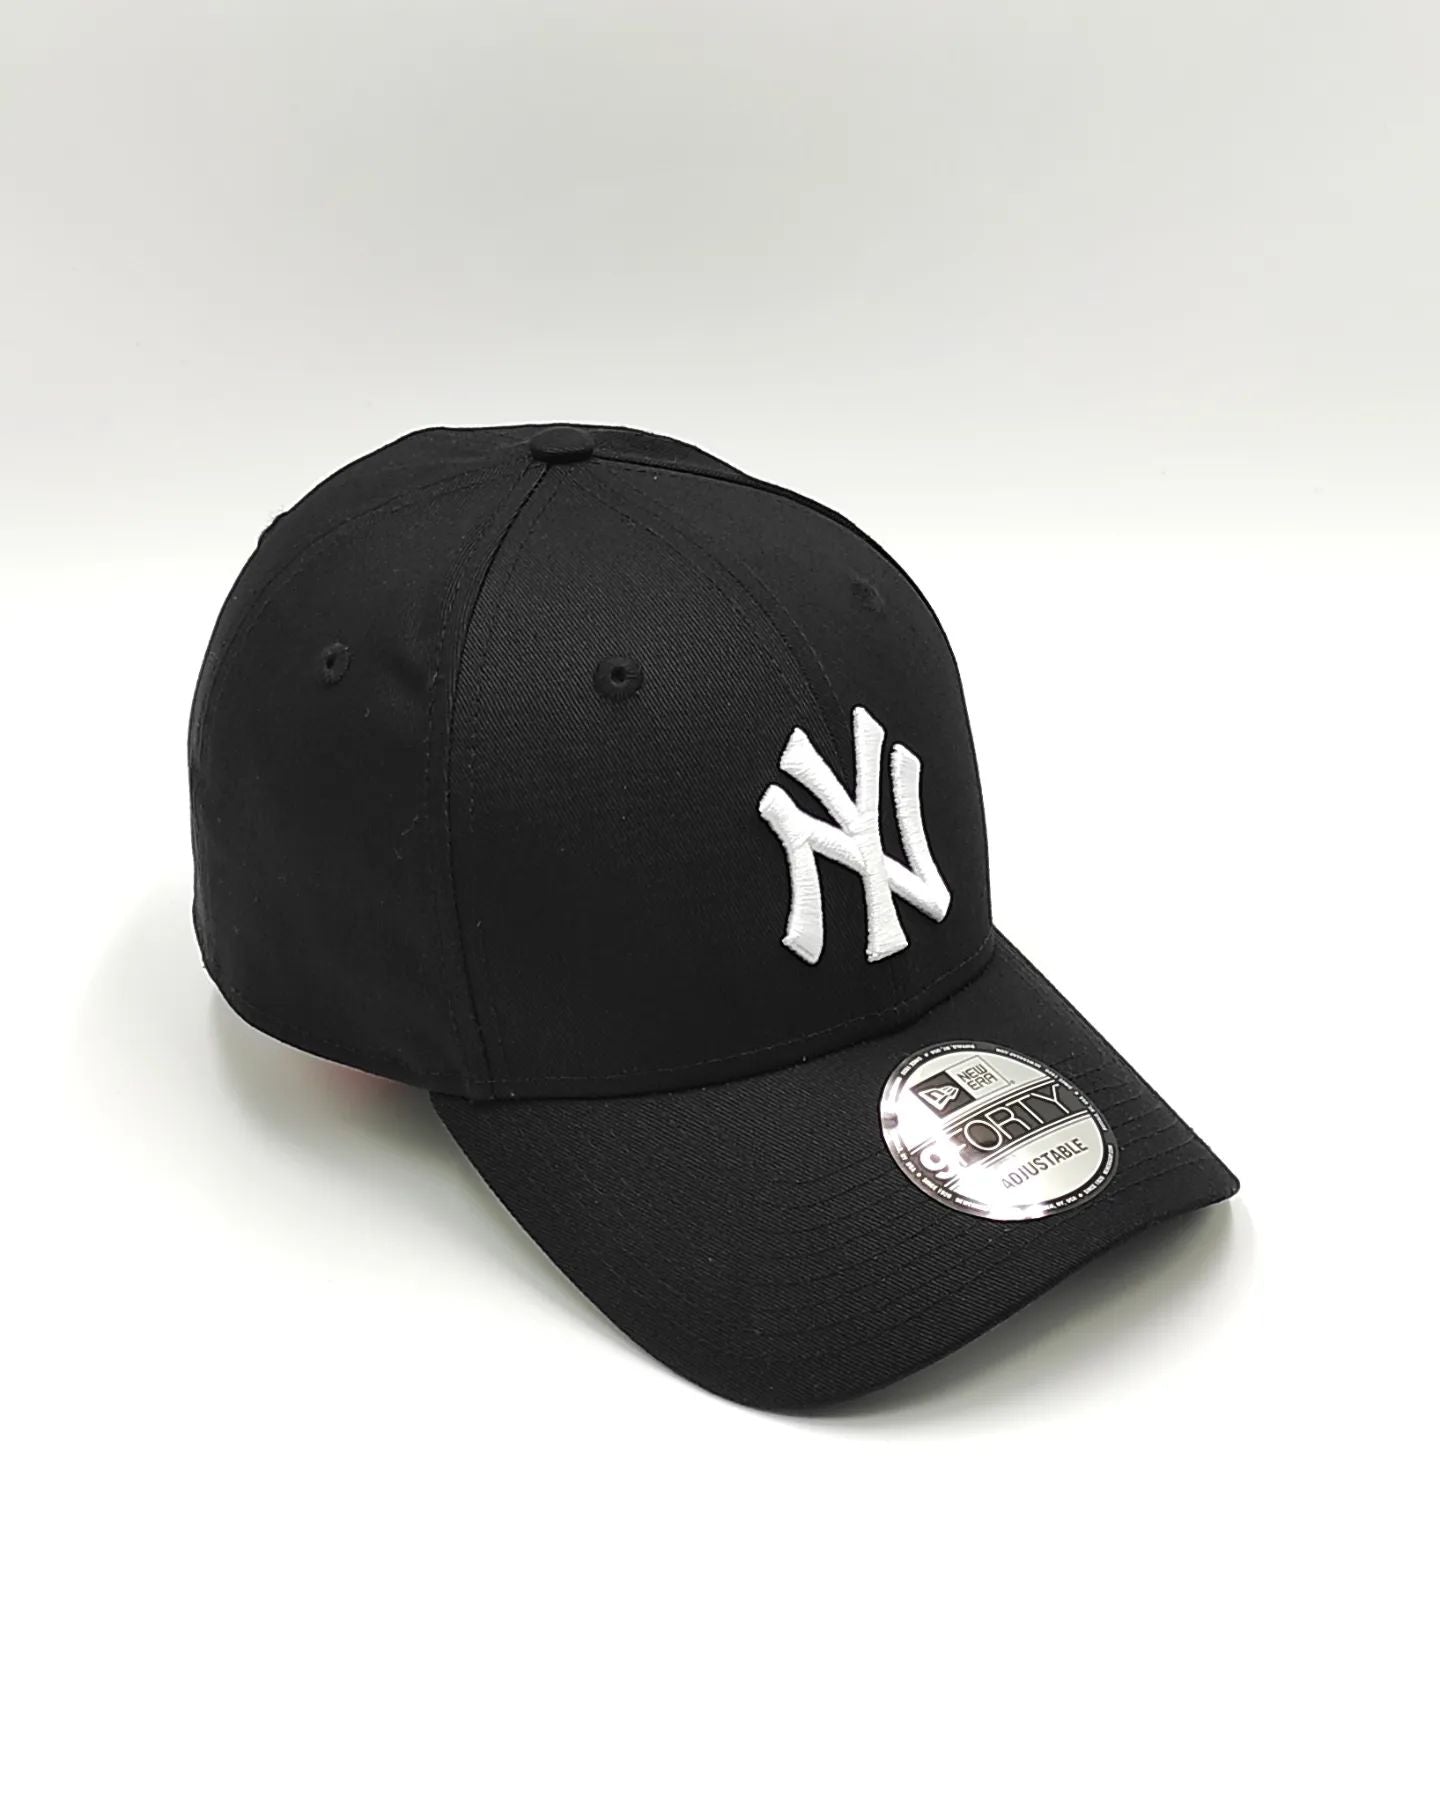 Gorra New York Yankees negra